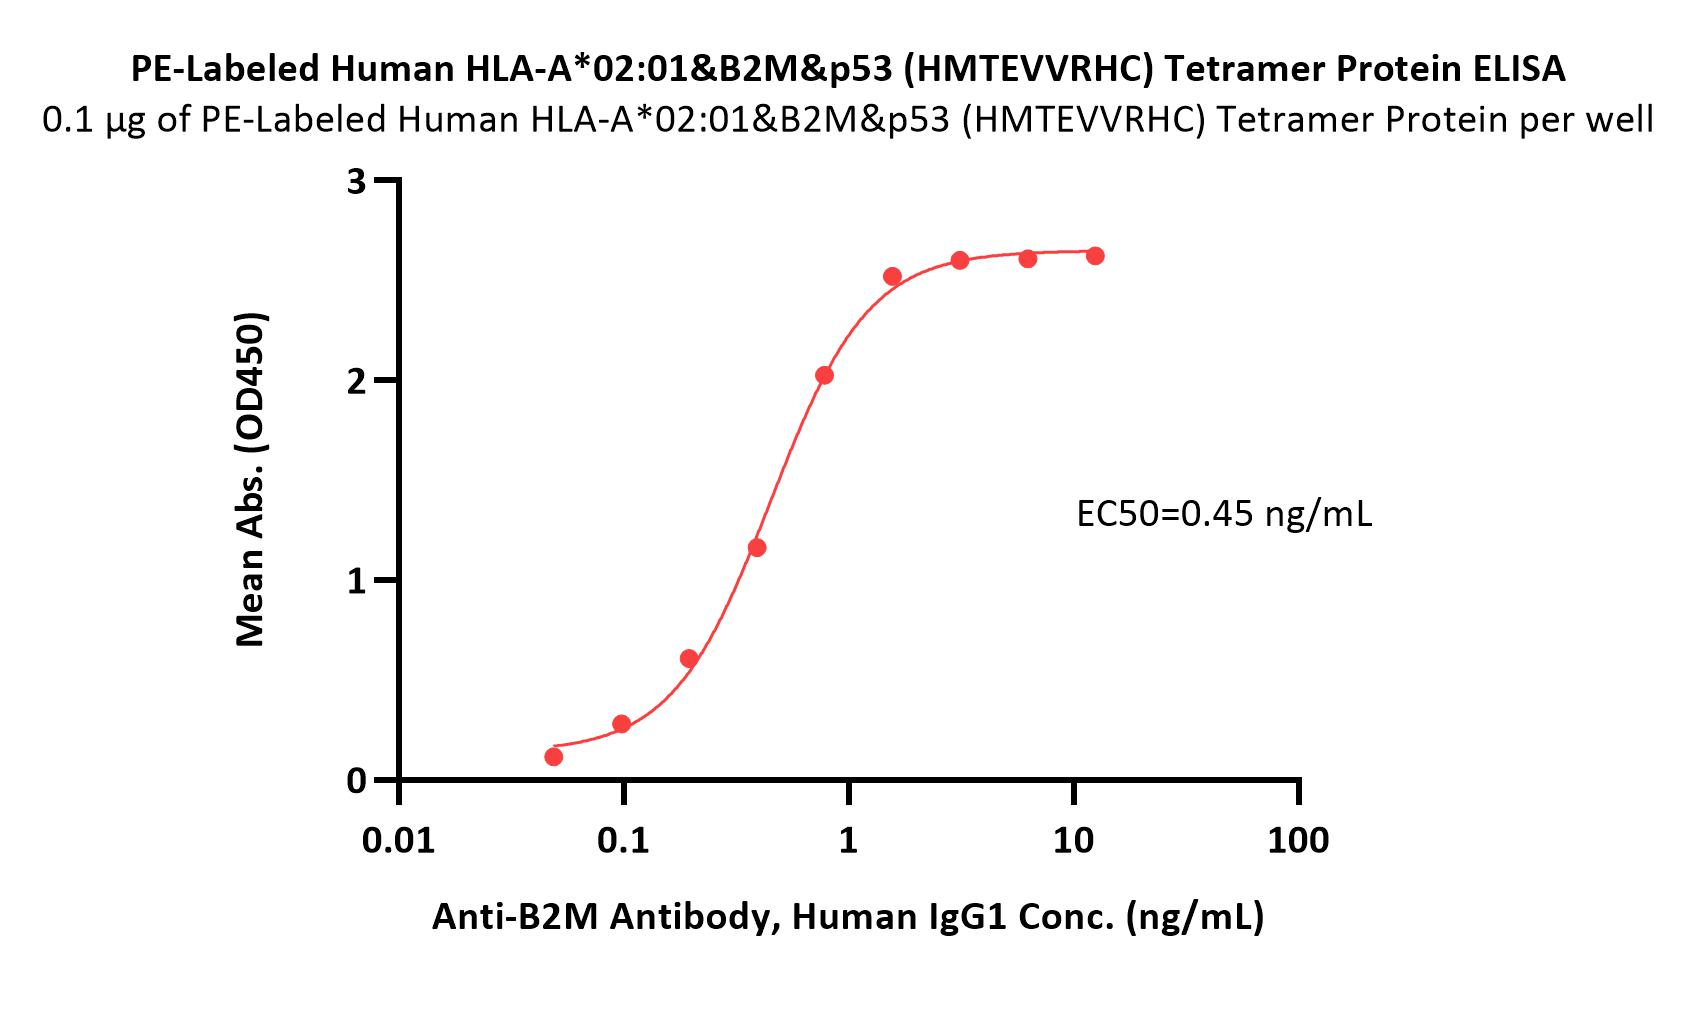 HLA-A*0201 & B2M & p53 (HMTEVVRHC) ELISA